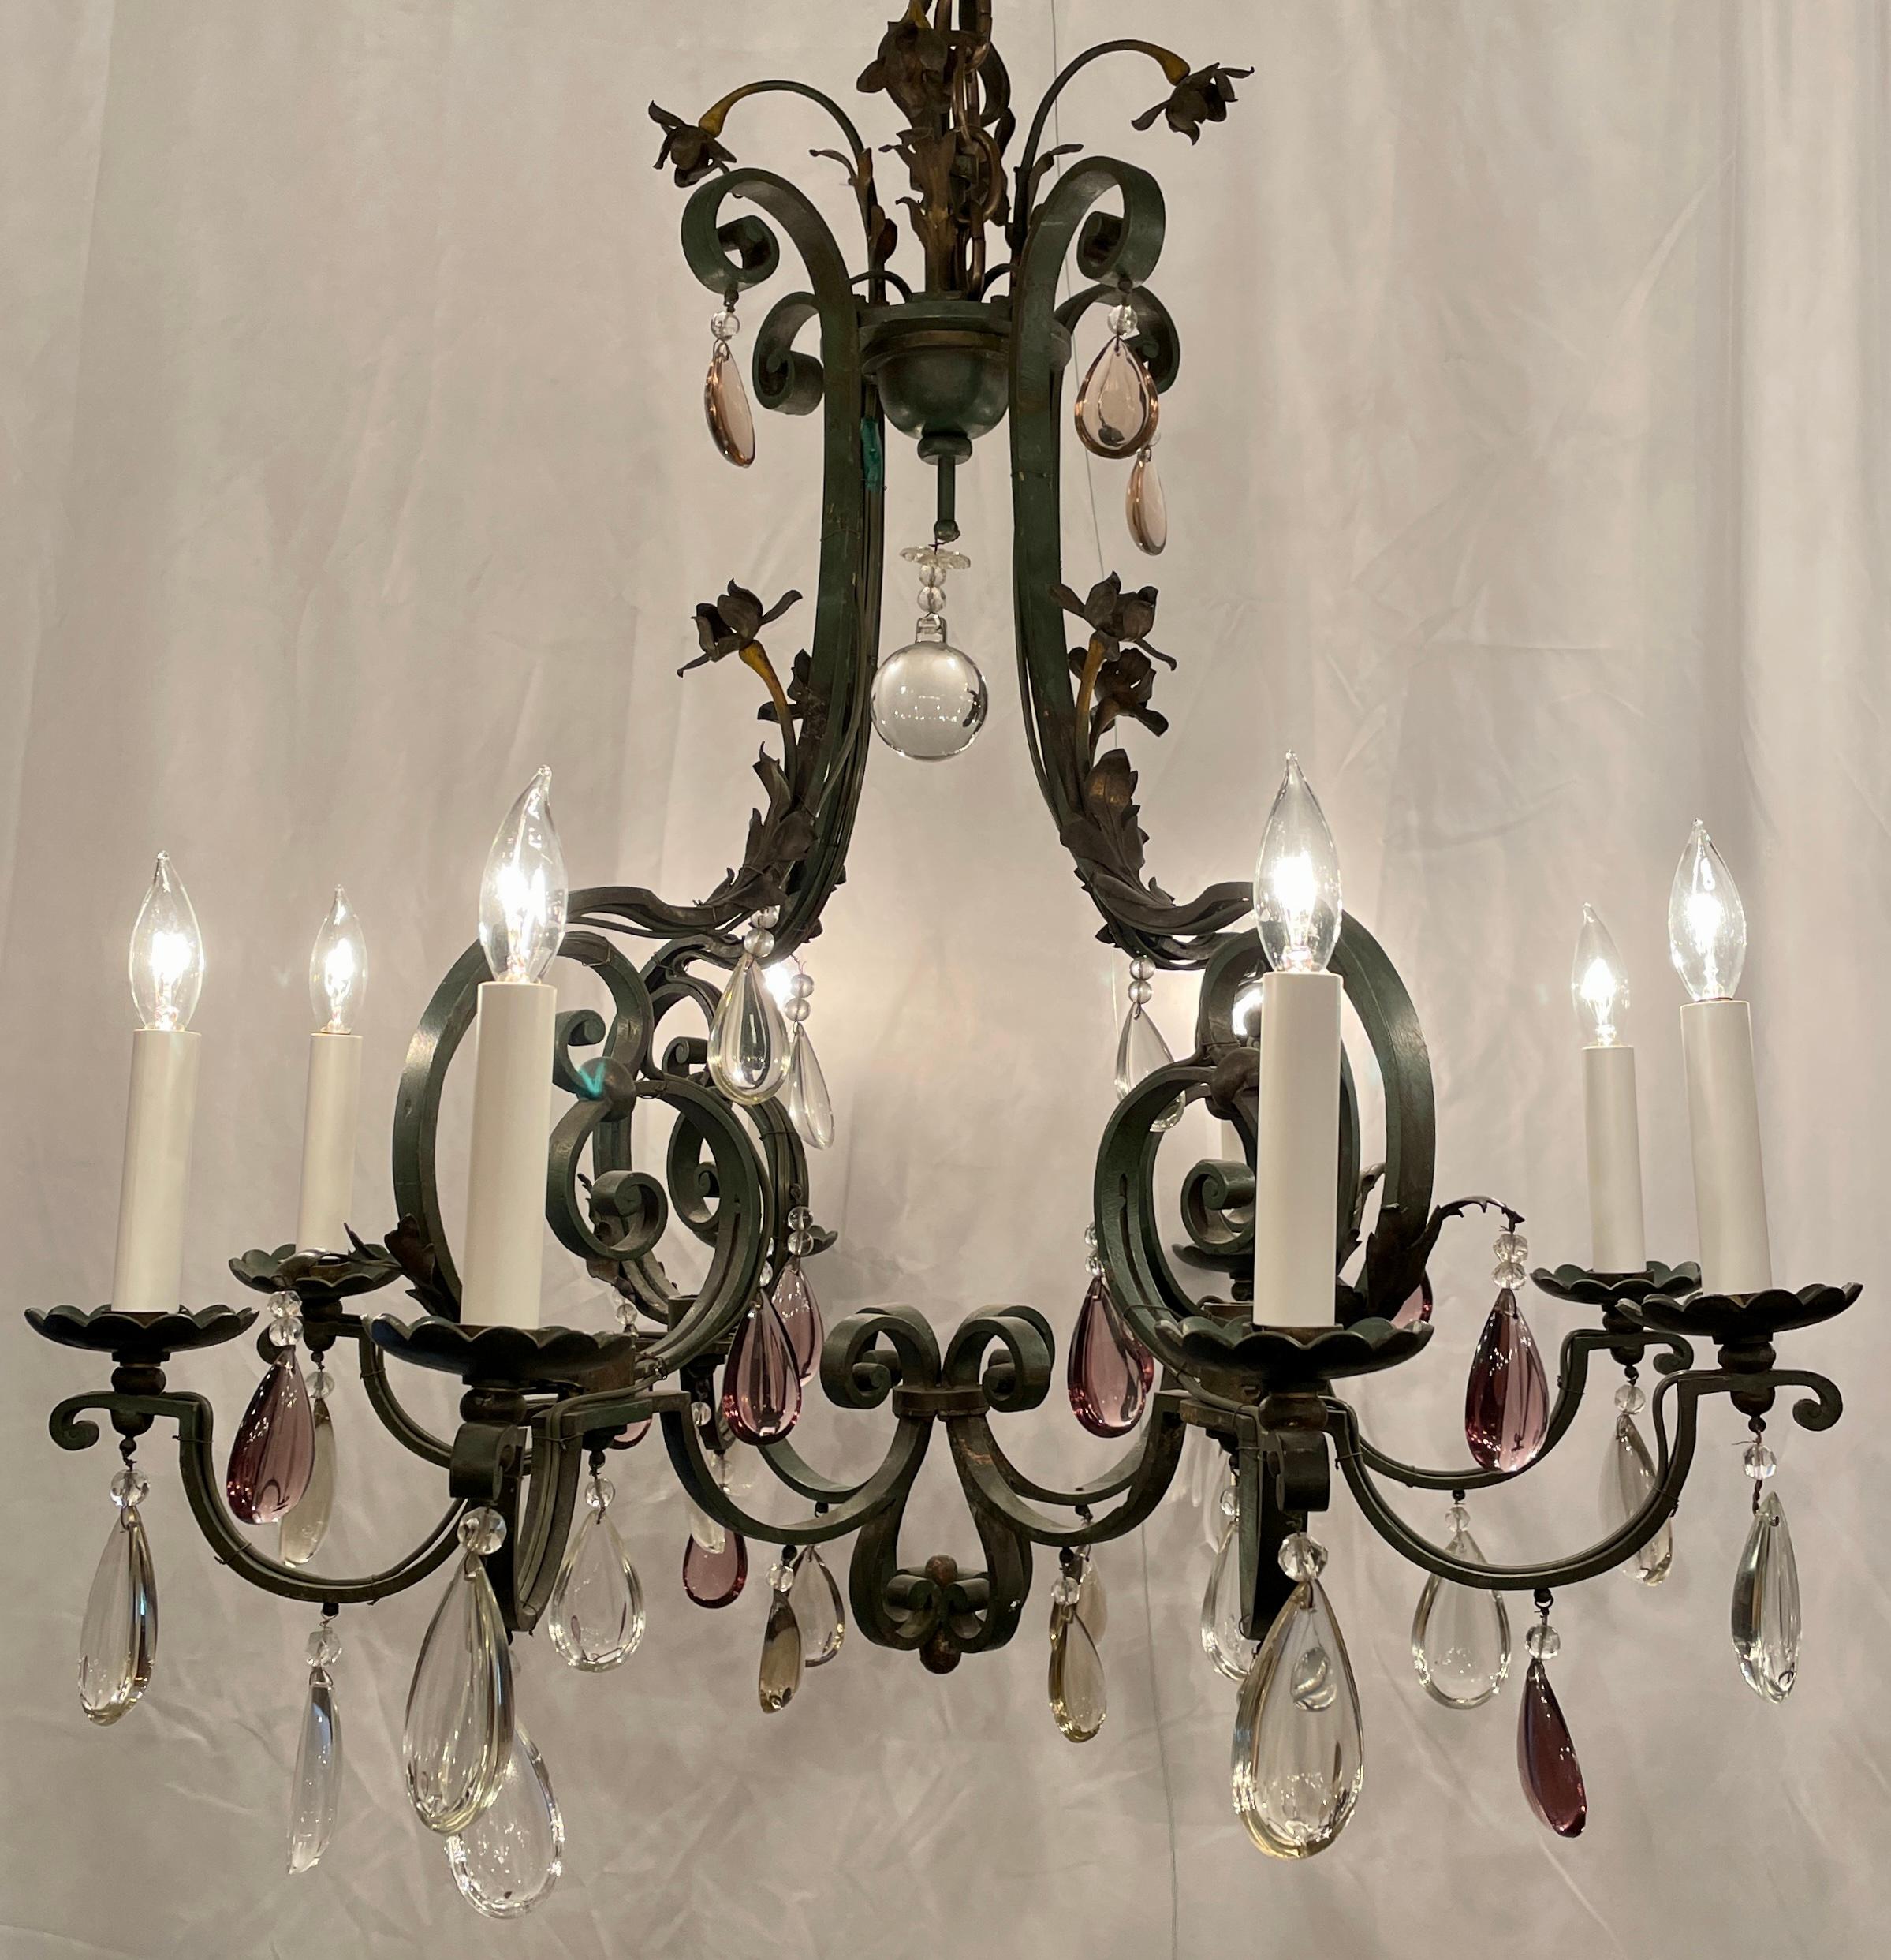 Lustre antique français en fer forgé et cristal à 8 lumières, Circa 1920.
Magnifique lustre en fer forgé à la main avec des prismes polis clairs et violets.